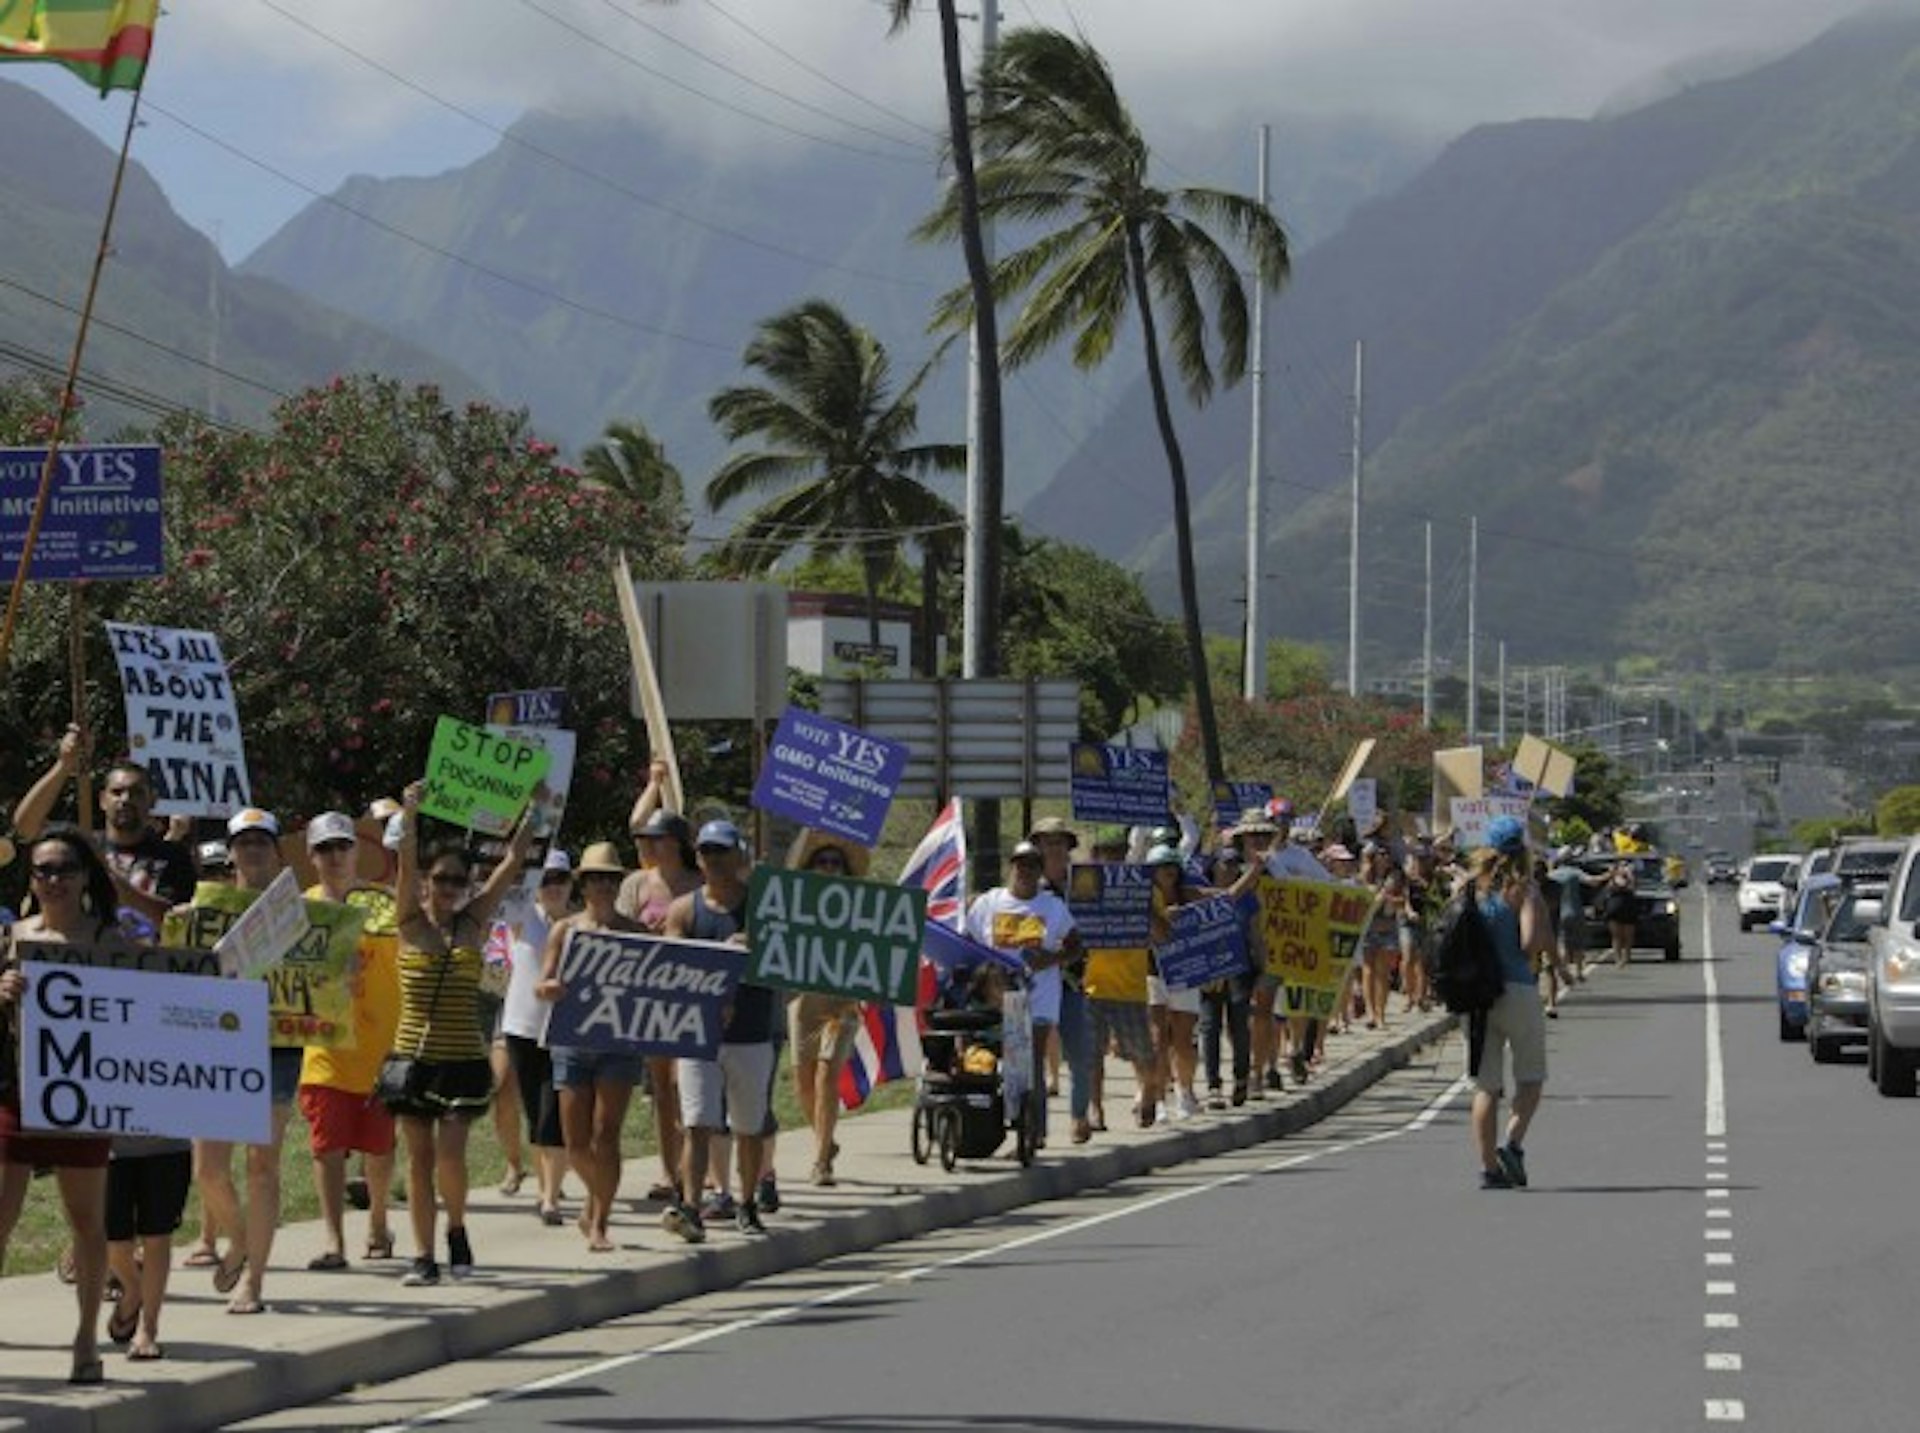 Maui's 2015 GMO moratorium bill march